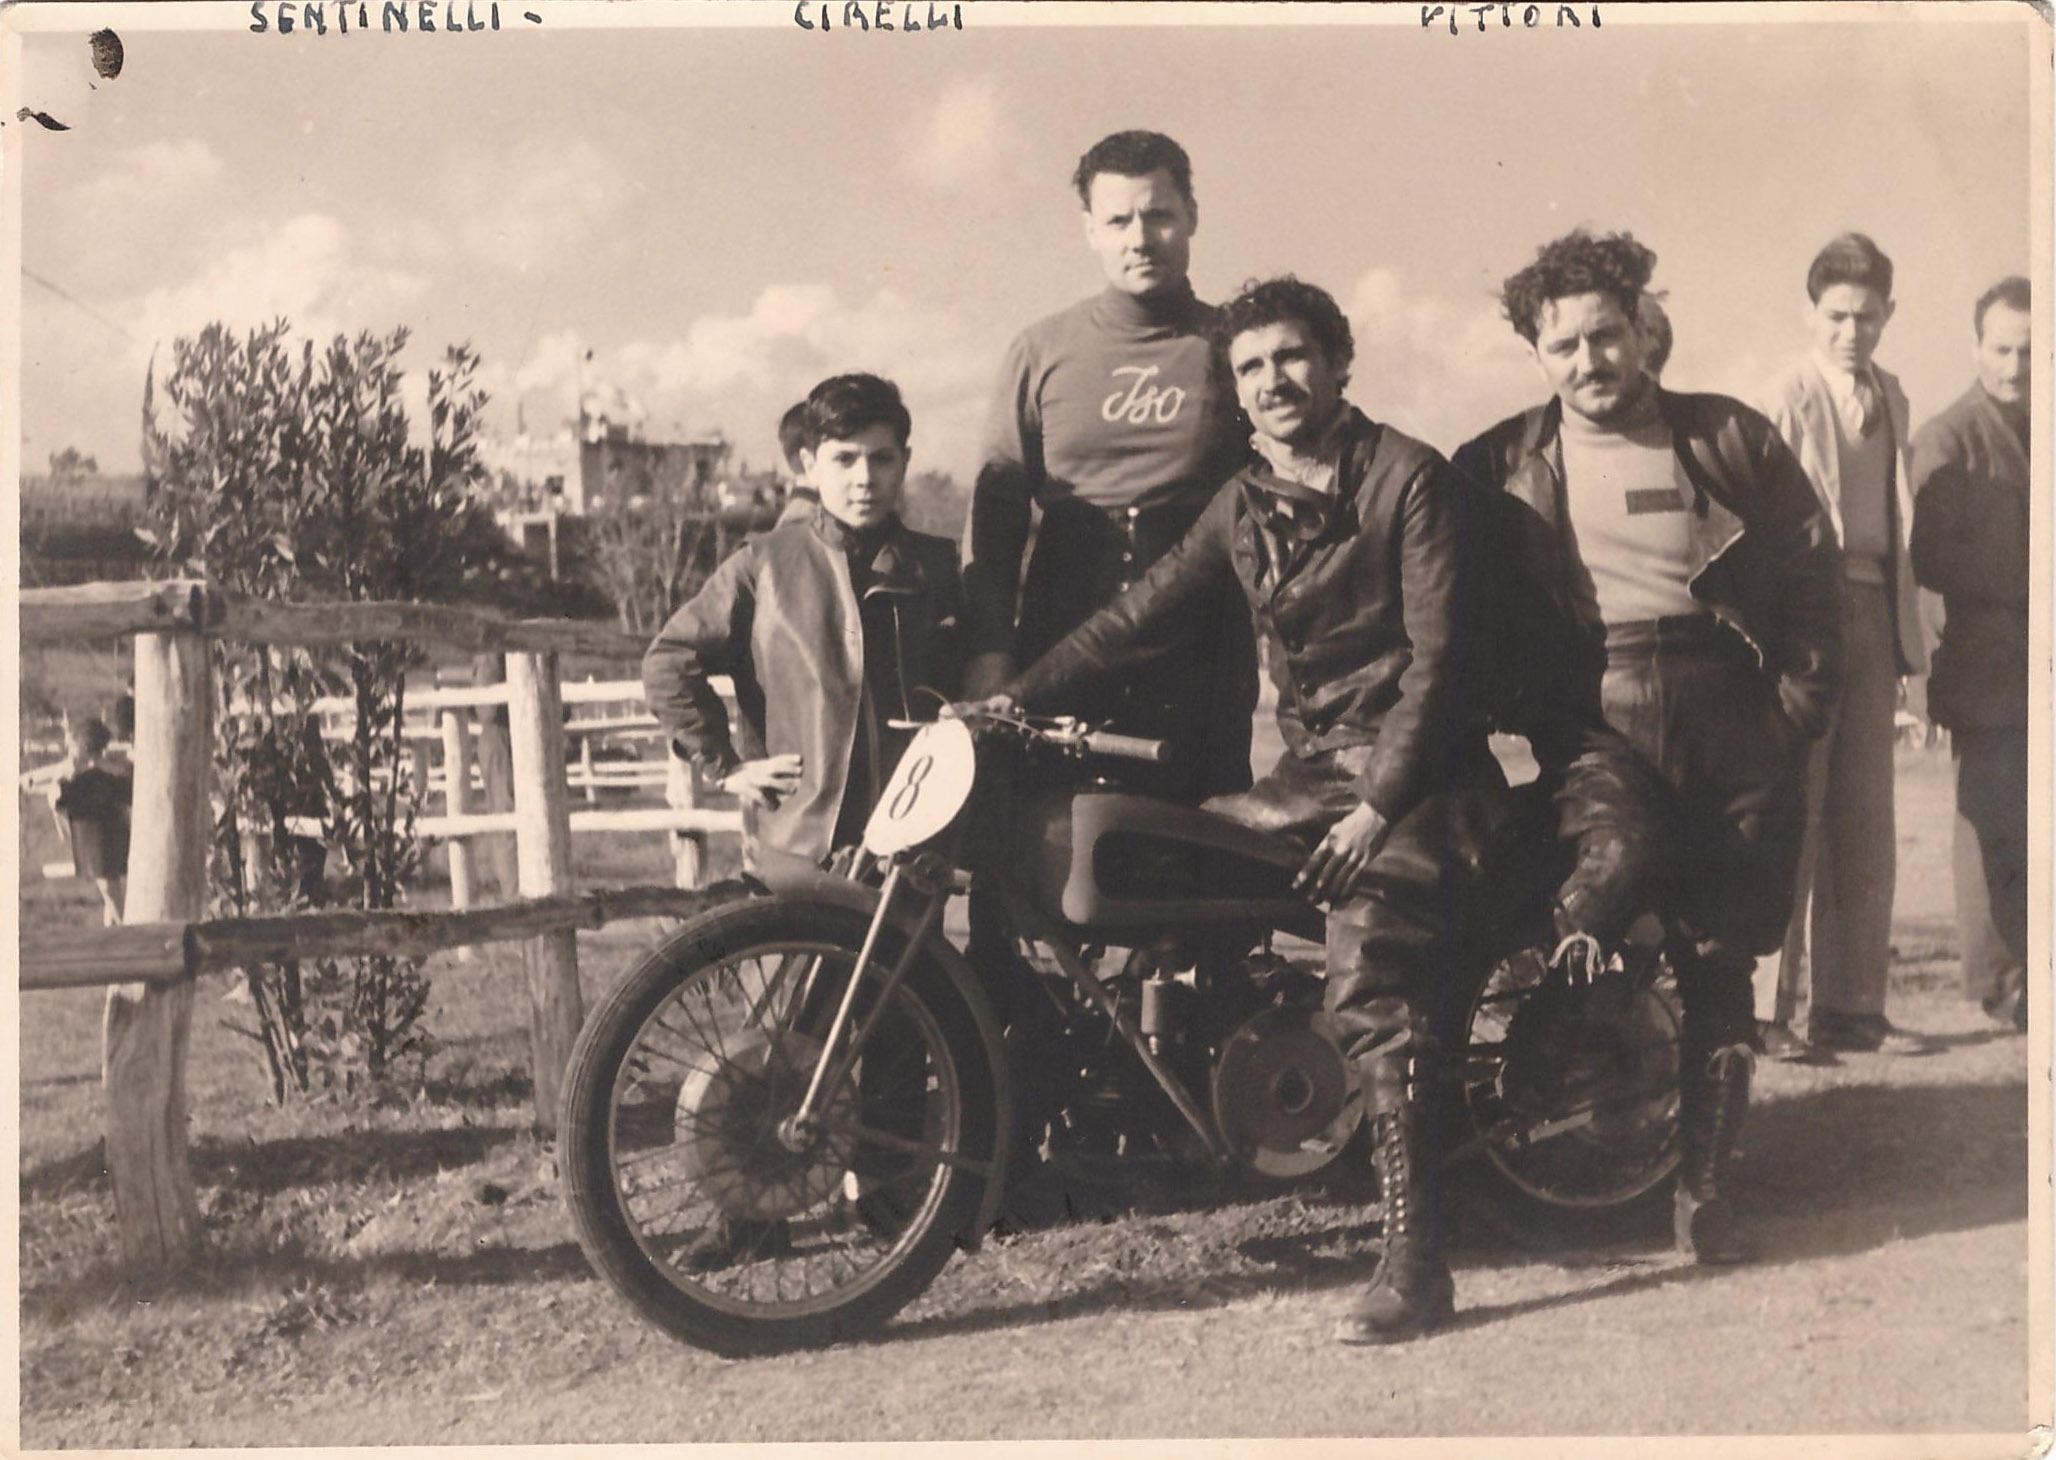 Carlo Sentinelli quando correva per la ISO. Nella foto Carlo (con accanto il figlio) è insieme ad altri 2 famosi piloti dell'epoca: Vittori e Cirelli.